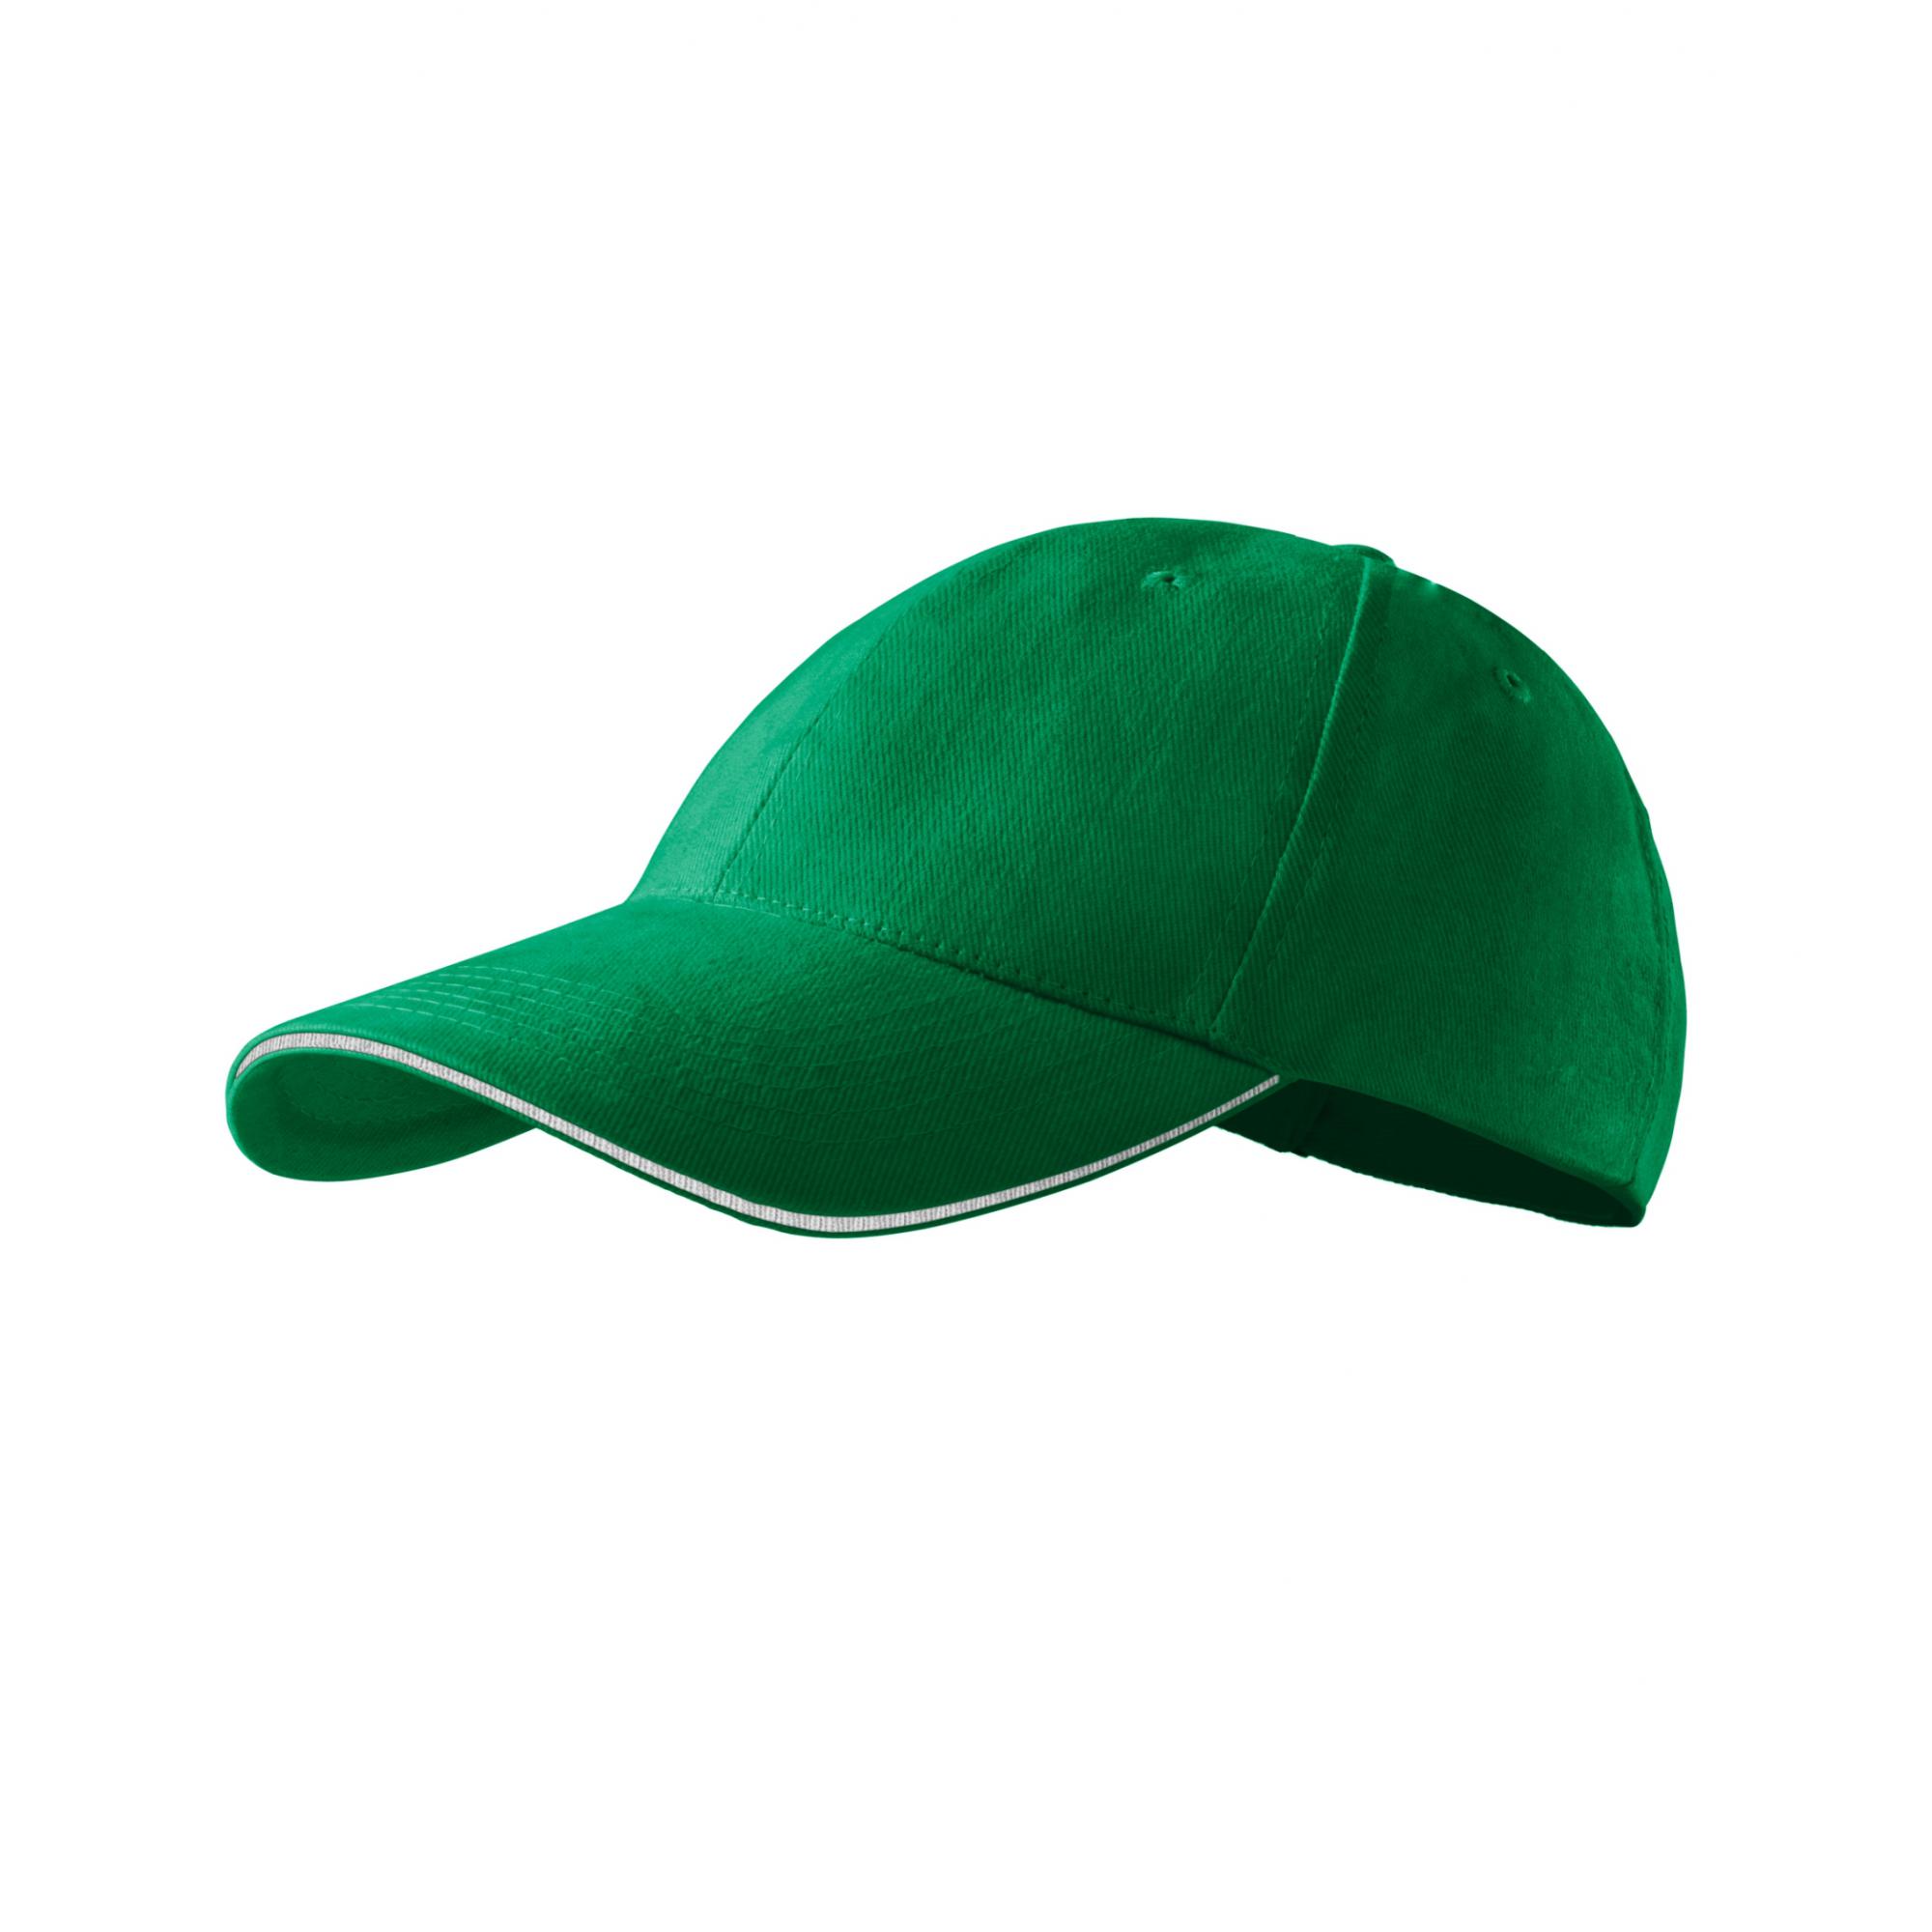 Şapcă unisex Sandwich 6P 306 Verde mediu Marime universala